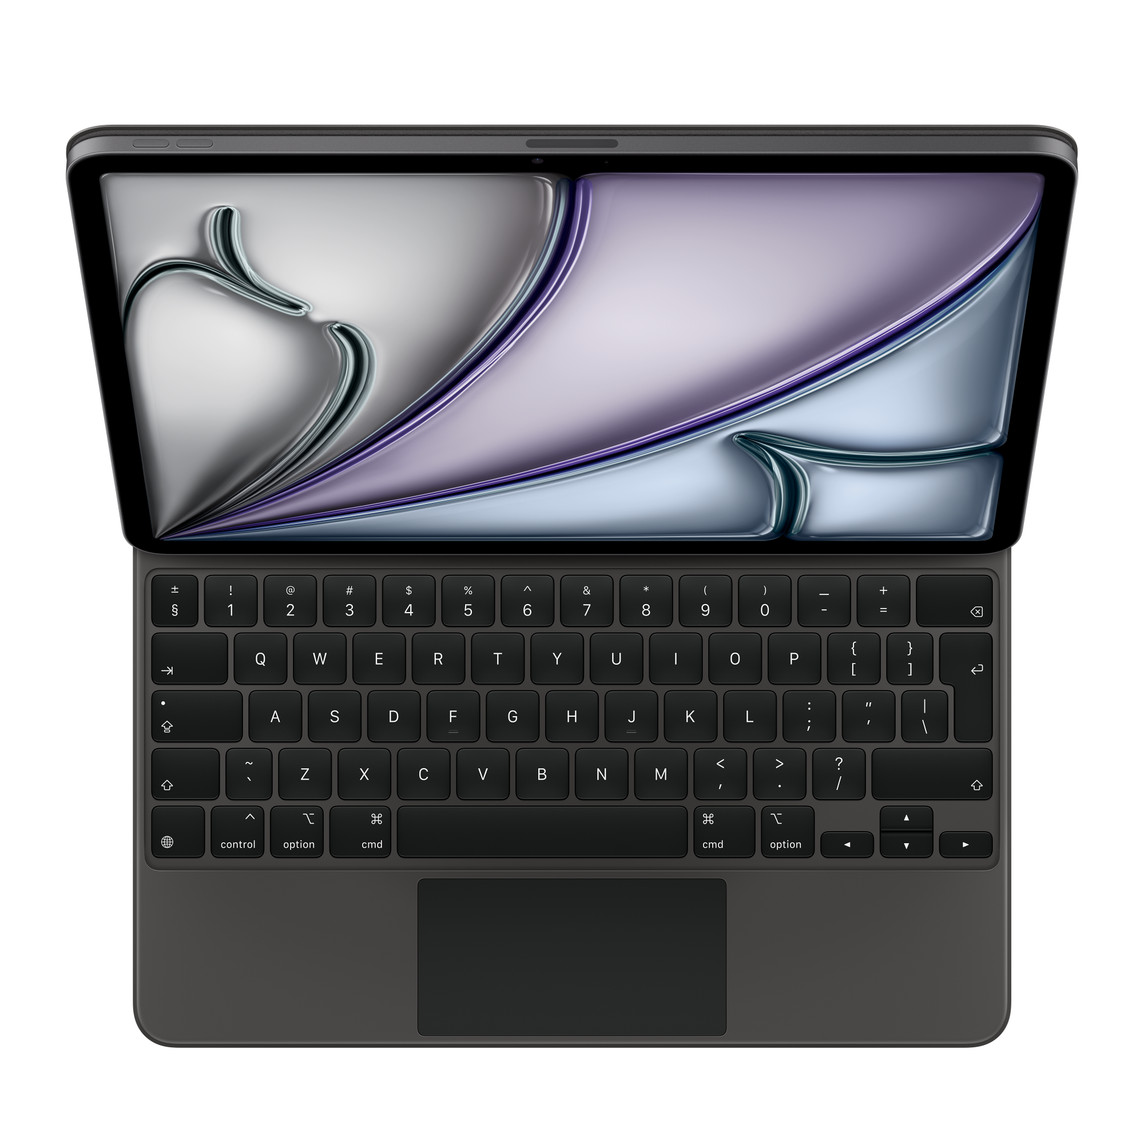 Widok z przodu klawiatury Magic Keyboard w kolorze czarnym podłączonej do iPada Pro 12,9 cala (5. generacji), do użytku z którym jest przeznaczona.